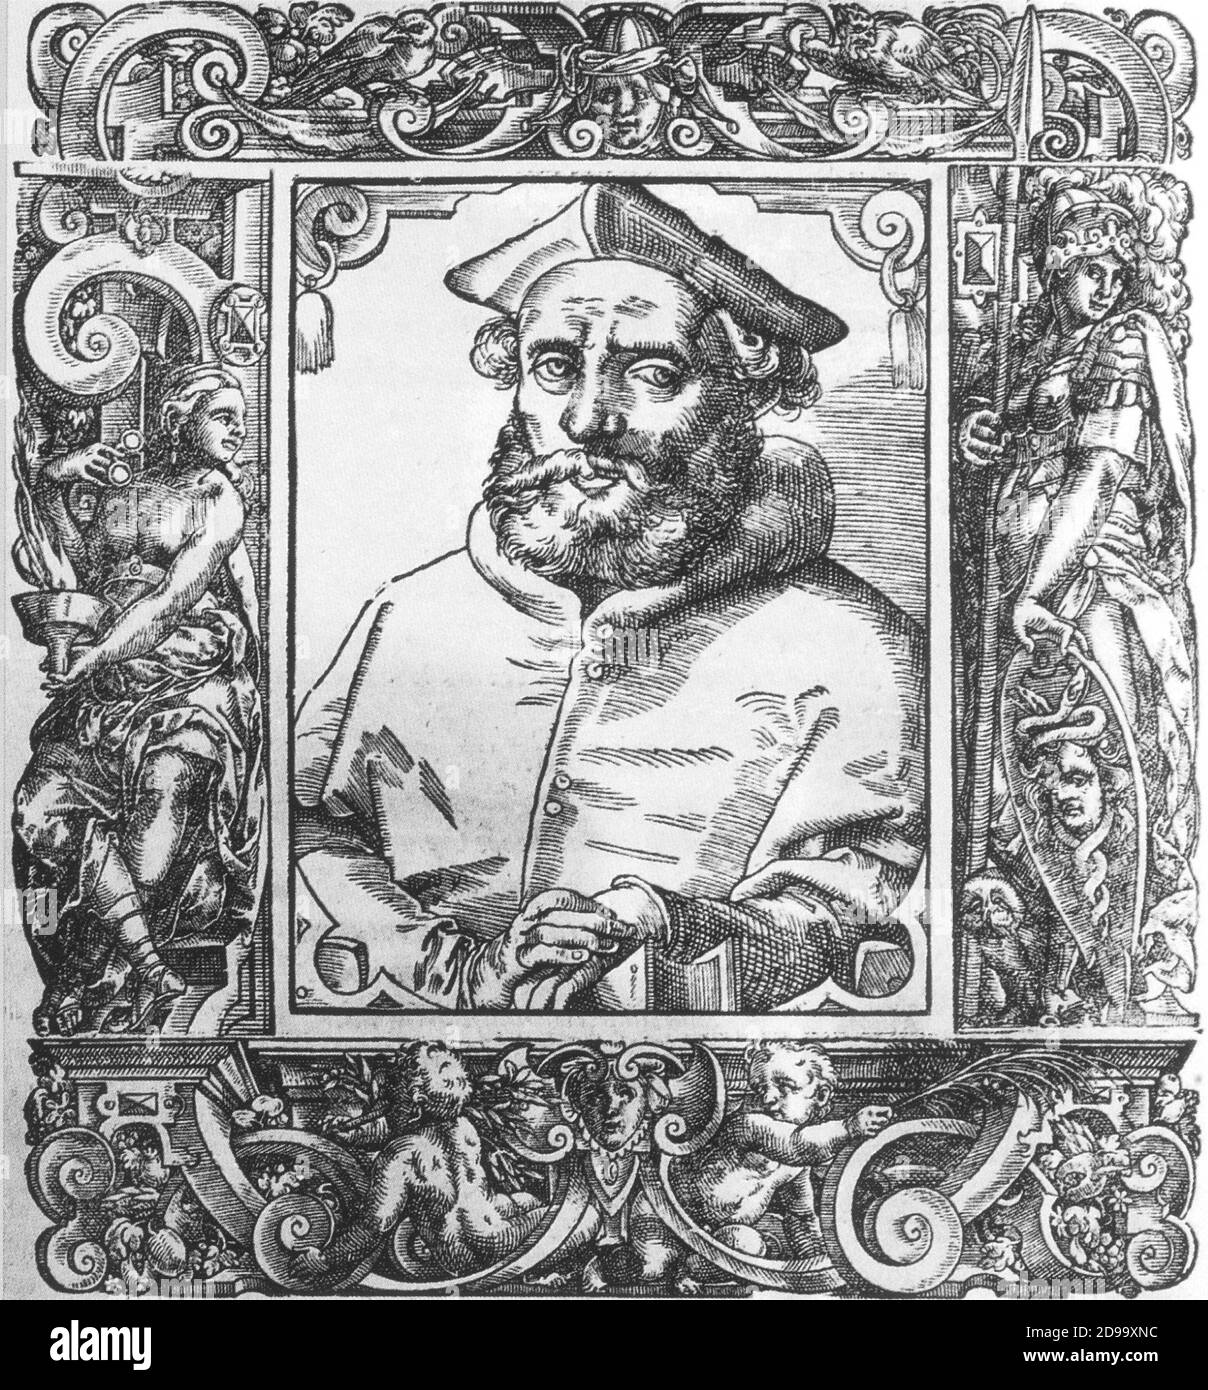 El Cardenal GASPARE CONTARINI ( 1575 , xilografía de P. Giovio ' Elogia virorum bellica Virtute illustrium ' , 1596 ) , Autor de ' Consilium de emendanda Ecclesia ' - CONCILIO DI TRENTO - Cardinale - alto prelato - VATICANO - RELIGIONE - RELIGIÓN - BARBA - barba - ritratto - retrato - TRENT COUNCIL - CONTRORIFORMA - CONTRARREFORMA - contrarreforma - sombrero ---- Archivio GBB Foto de stock